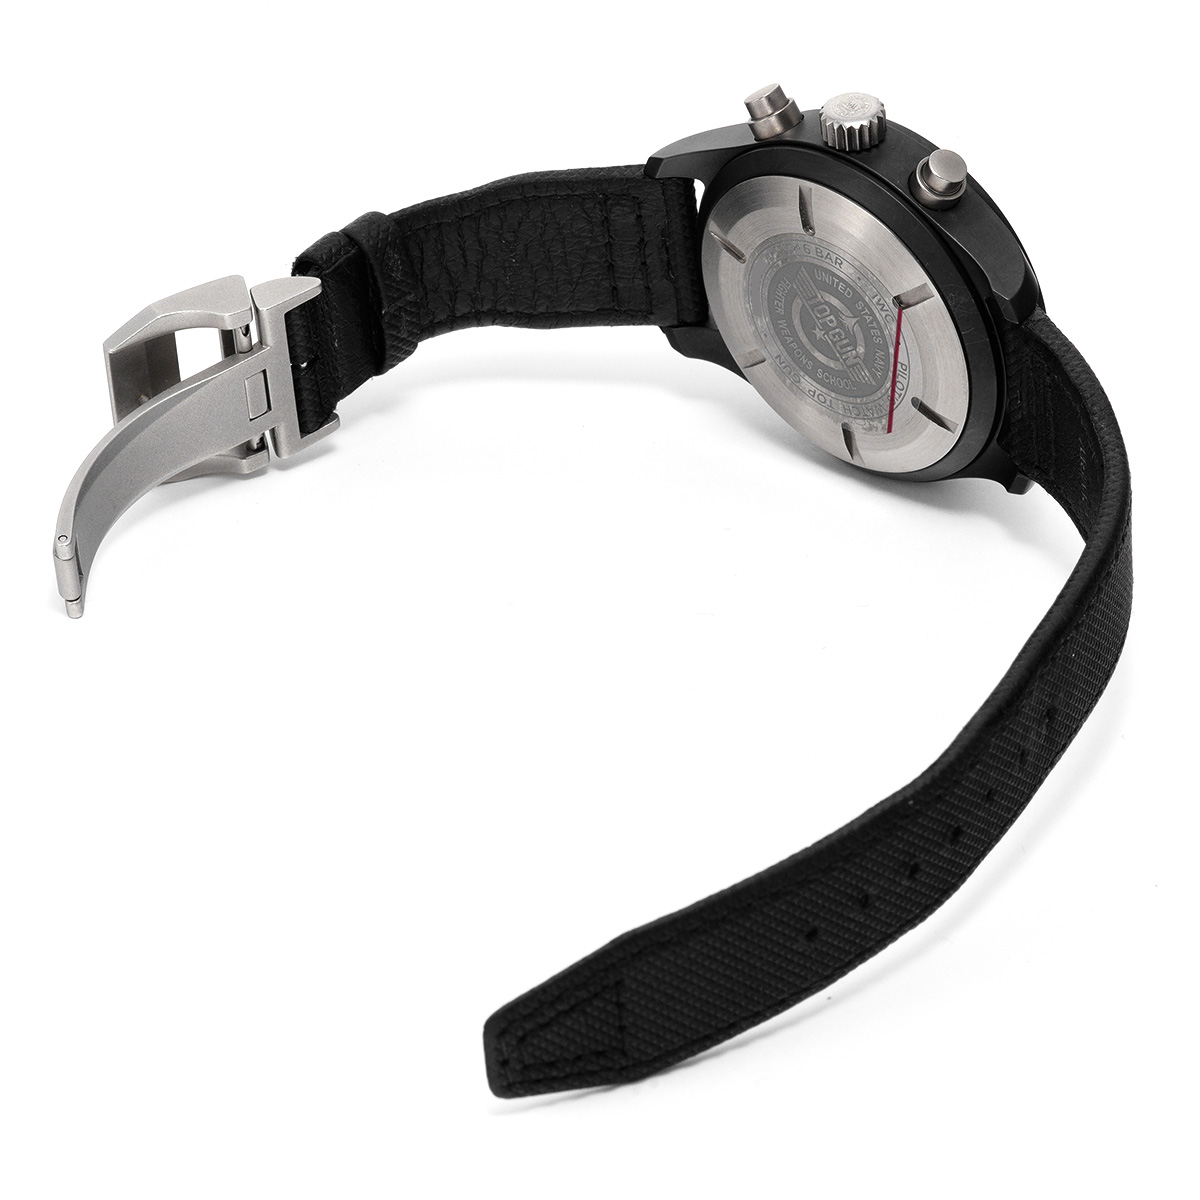 インターナショナルウォッチカンパニー IWC IW389001 ブラック メンズ 腕時計